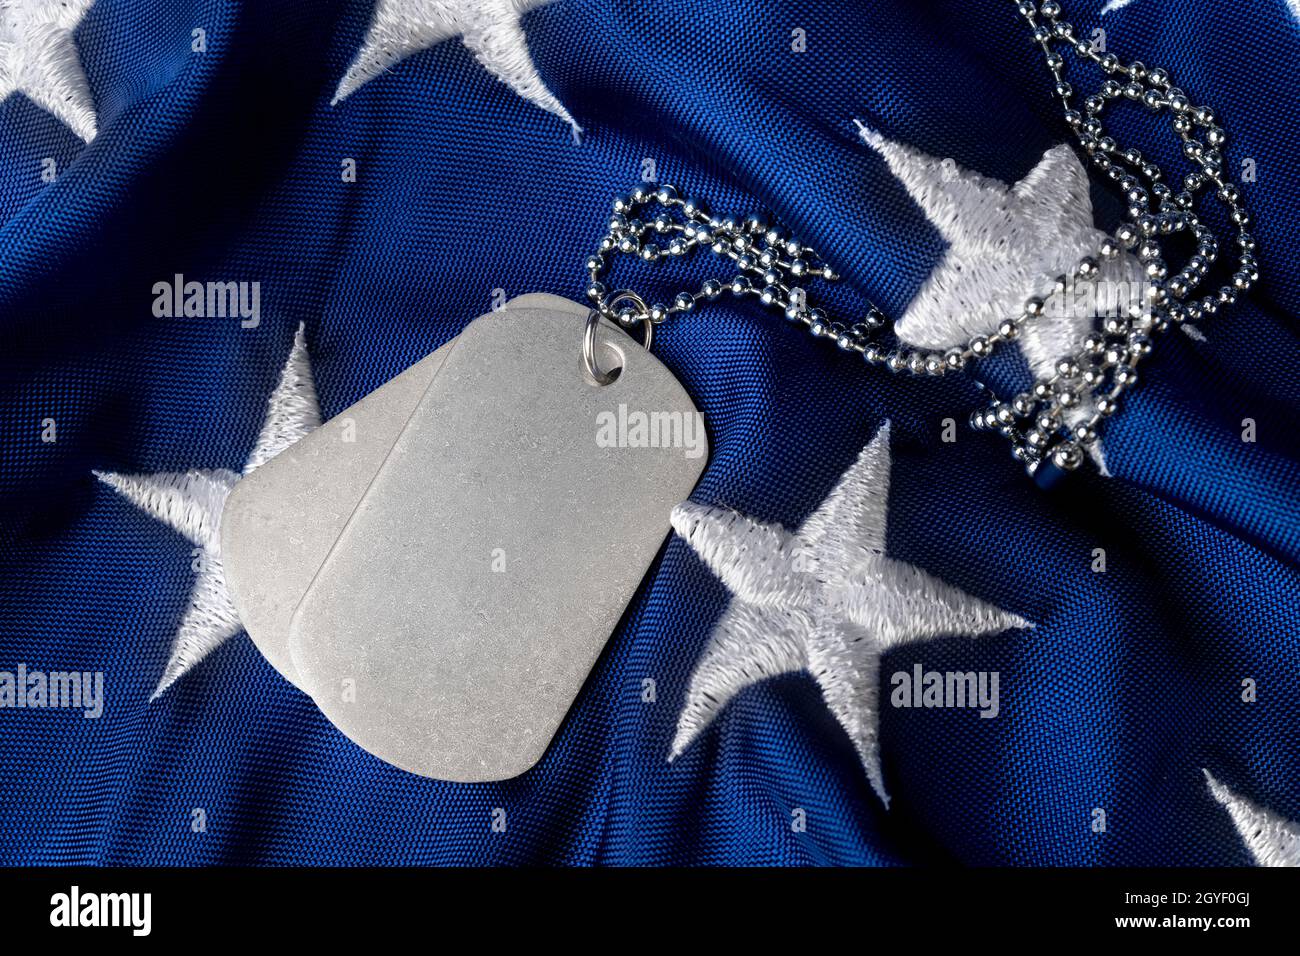 Le etichette bianche del cane militare sulle stelle della bandiera americana permettono il posizionamento della copia sulla superficie. Foto Stock